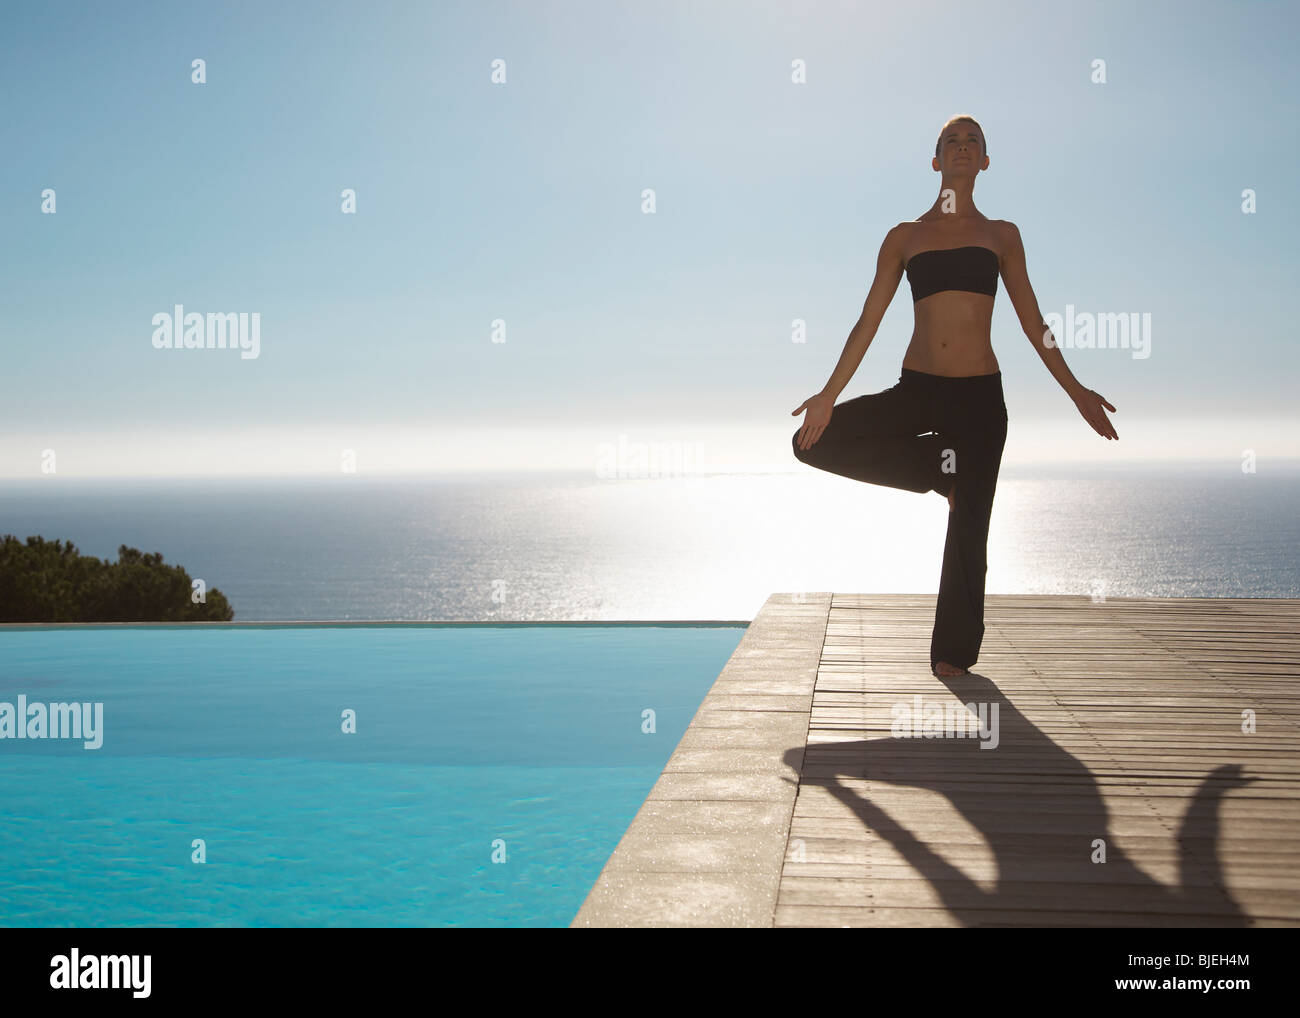 Mujer joven practicando yoga en una piscina con vistas al océano en el fondo Foto de stock